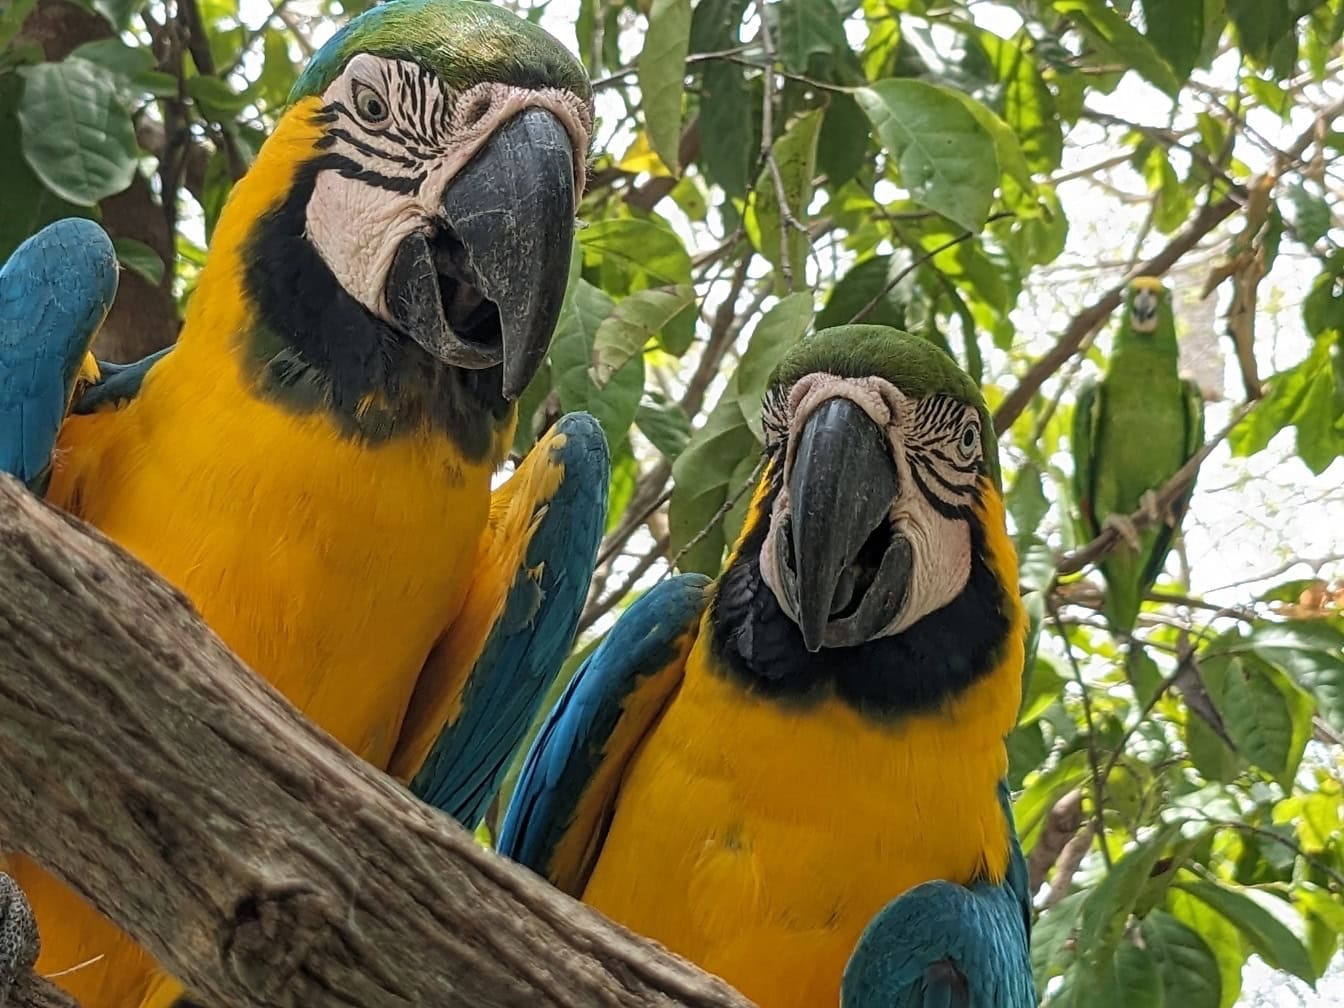 Kolorowa niebiesko-żółta ara (Ara ararauna) znana również jako niebiesko-złota papuga